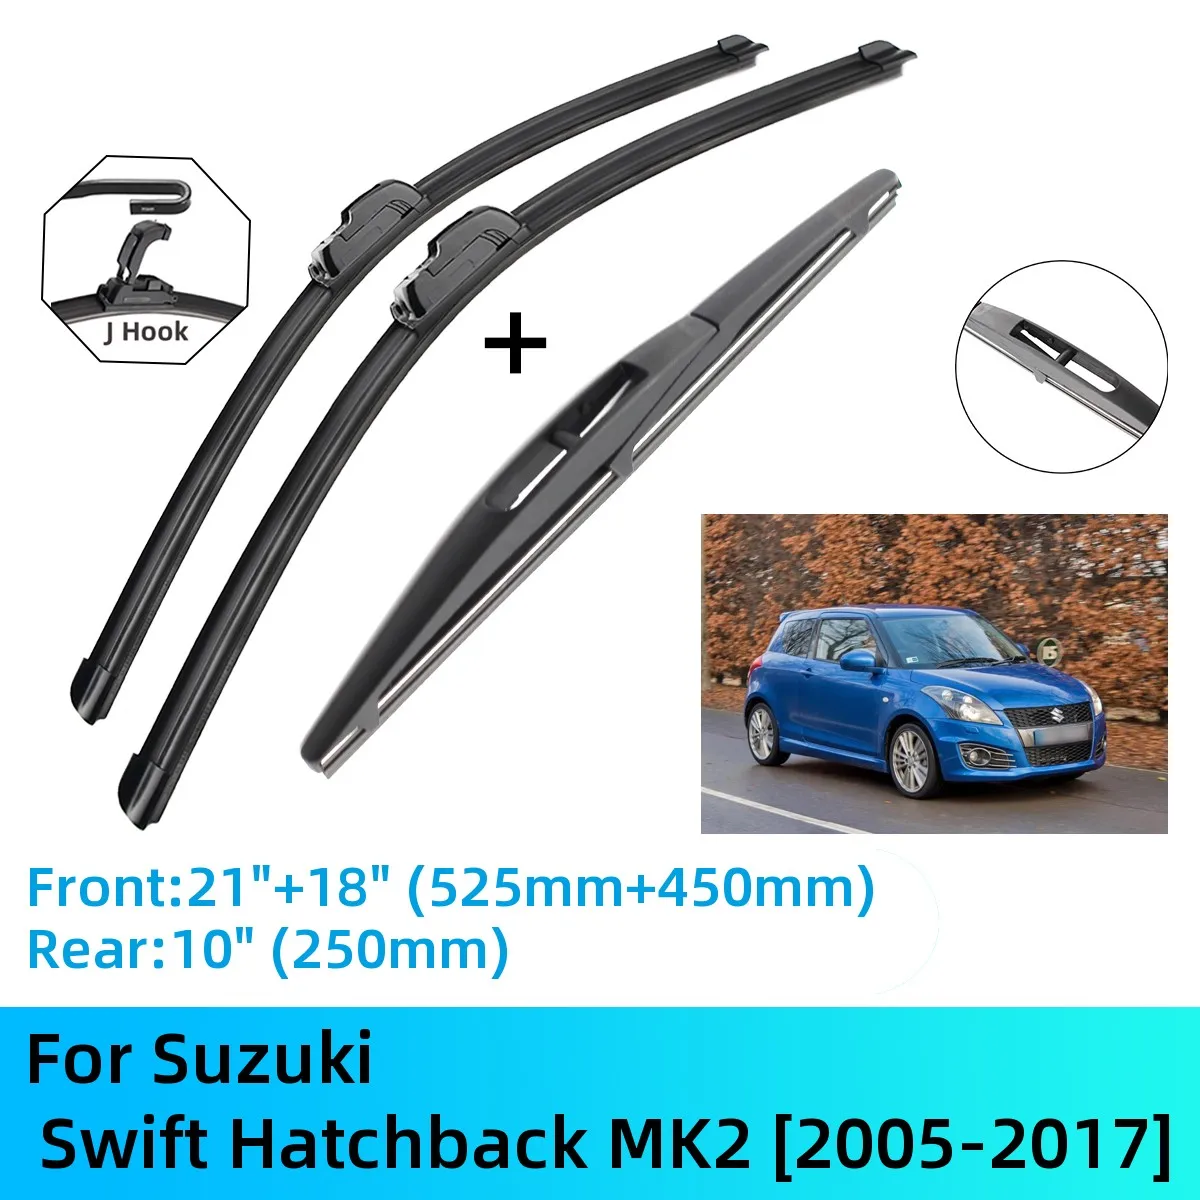 

For Suzuki Swift Hatchback MK2 Front Rear Wiper Blades Brushes Cutter Accessories J U Hook 2005-2017 2010 2011 2012 2013 2014